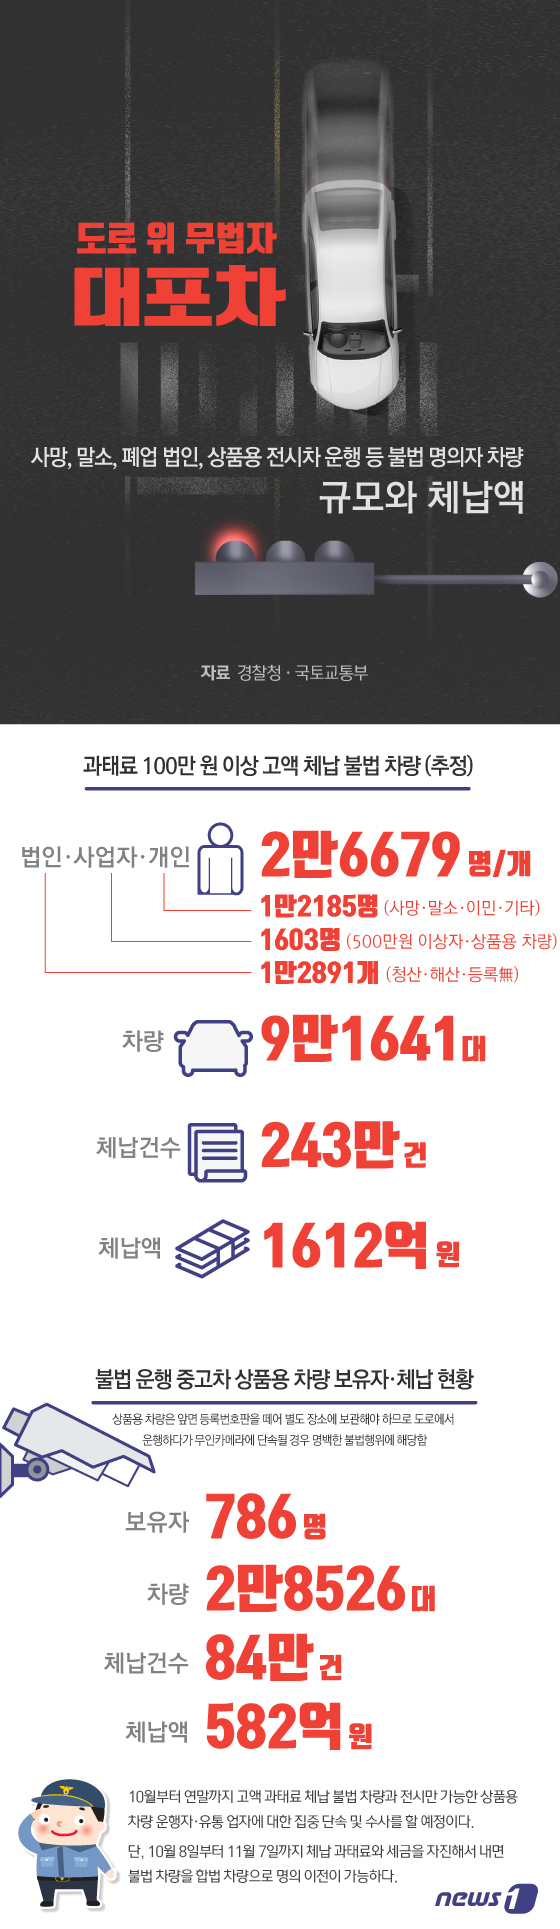 [그래픽뉴스] 대포차(불법 명의 고액체납 차량) 규모